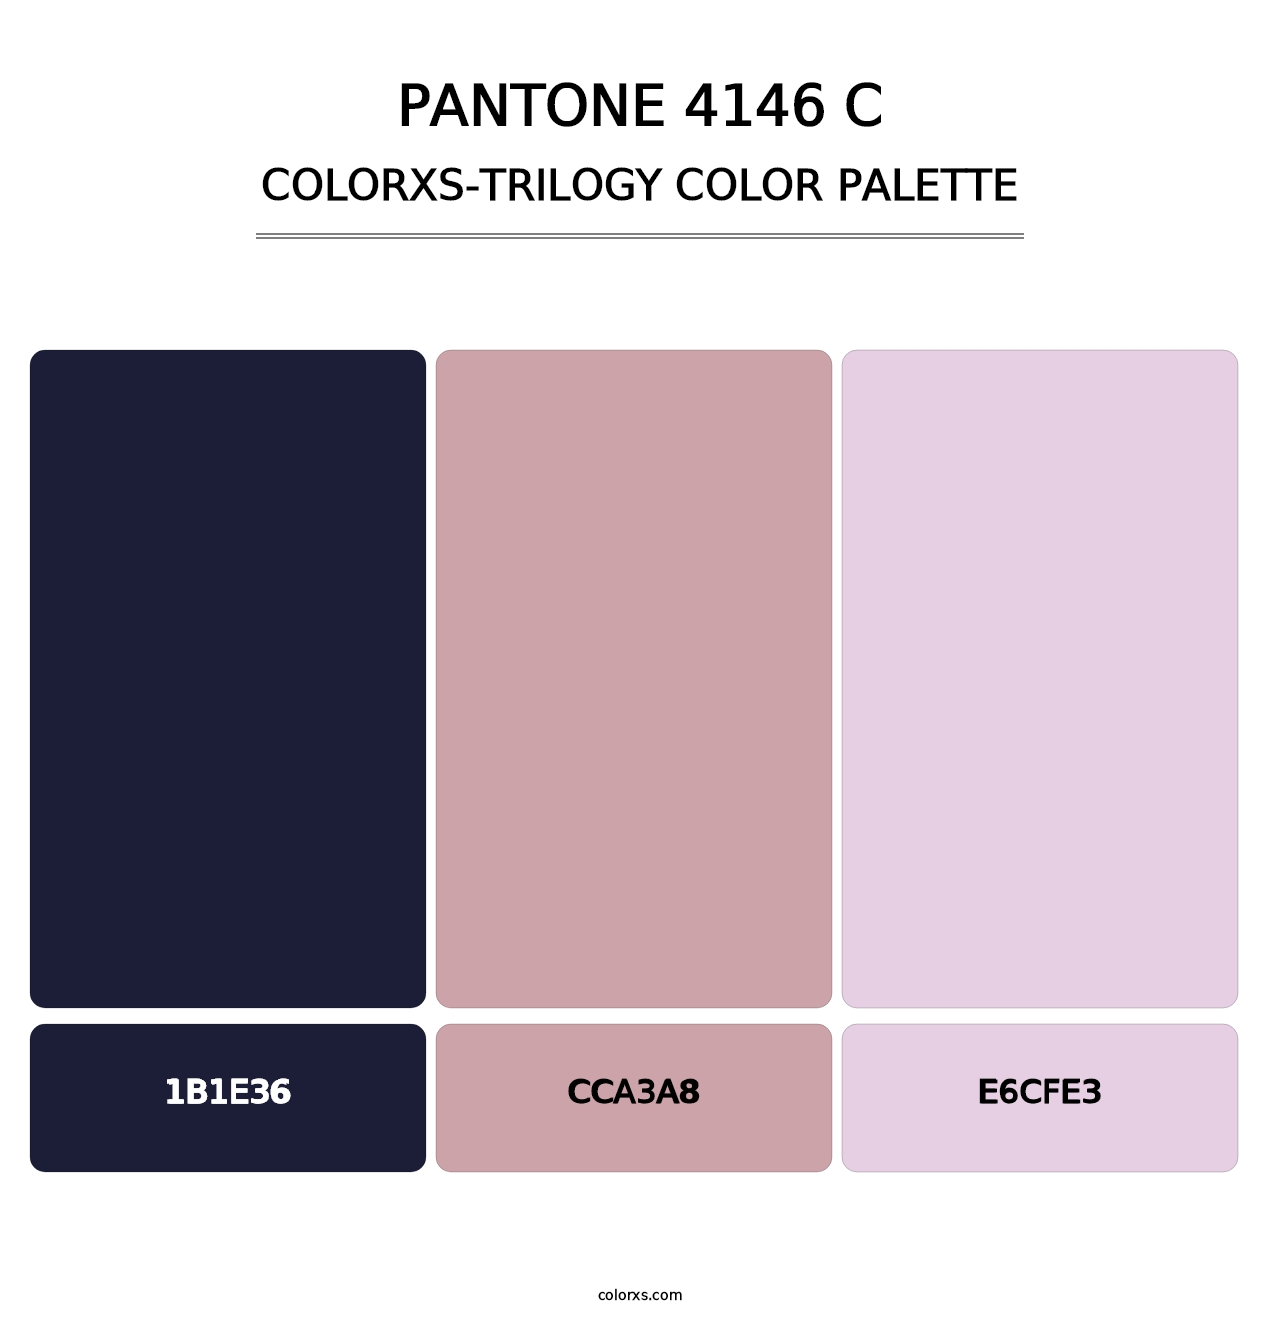 PANTONE 4146 C - Colorxs Trilogy Palette